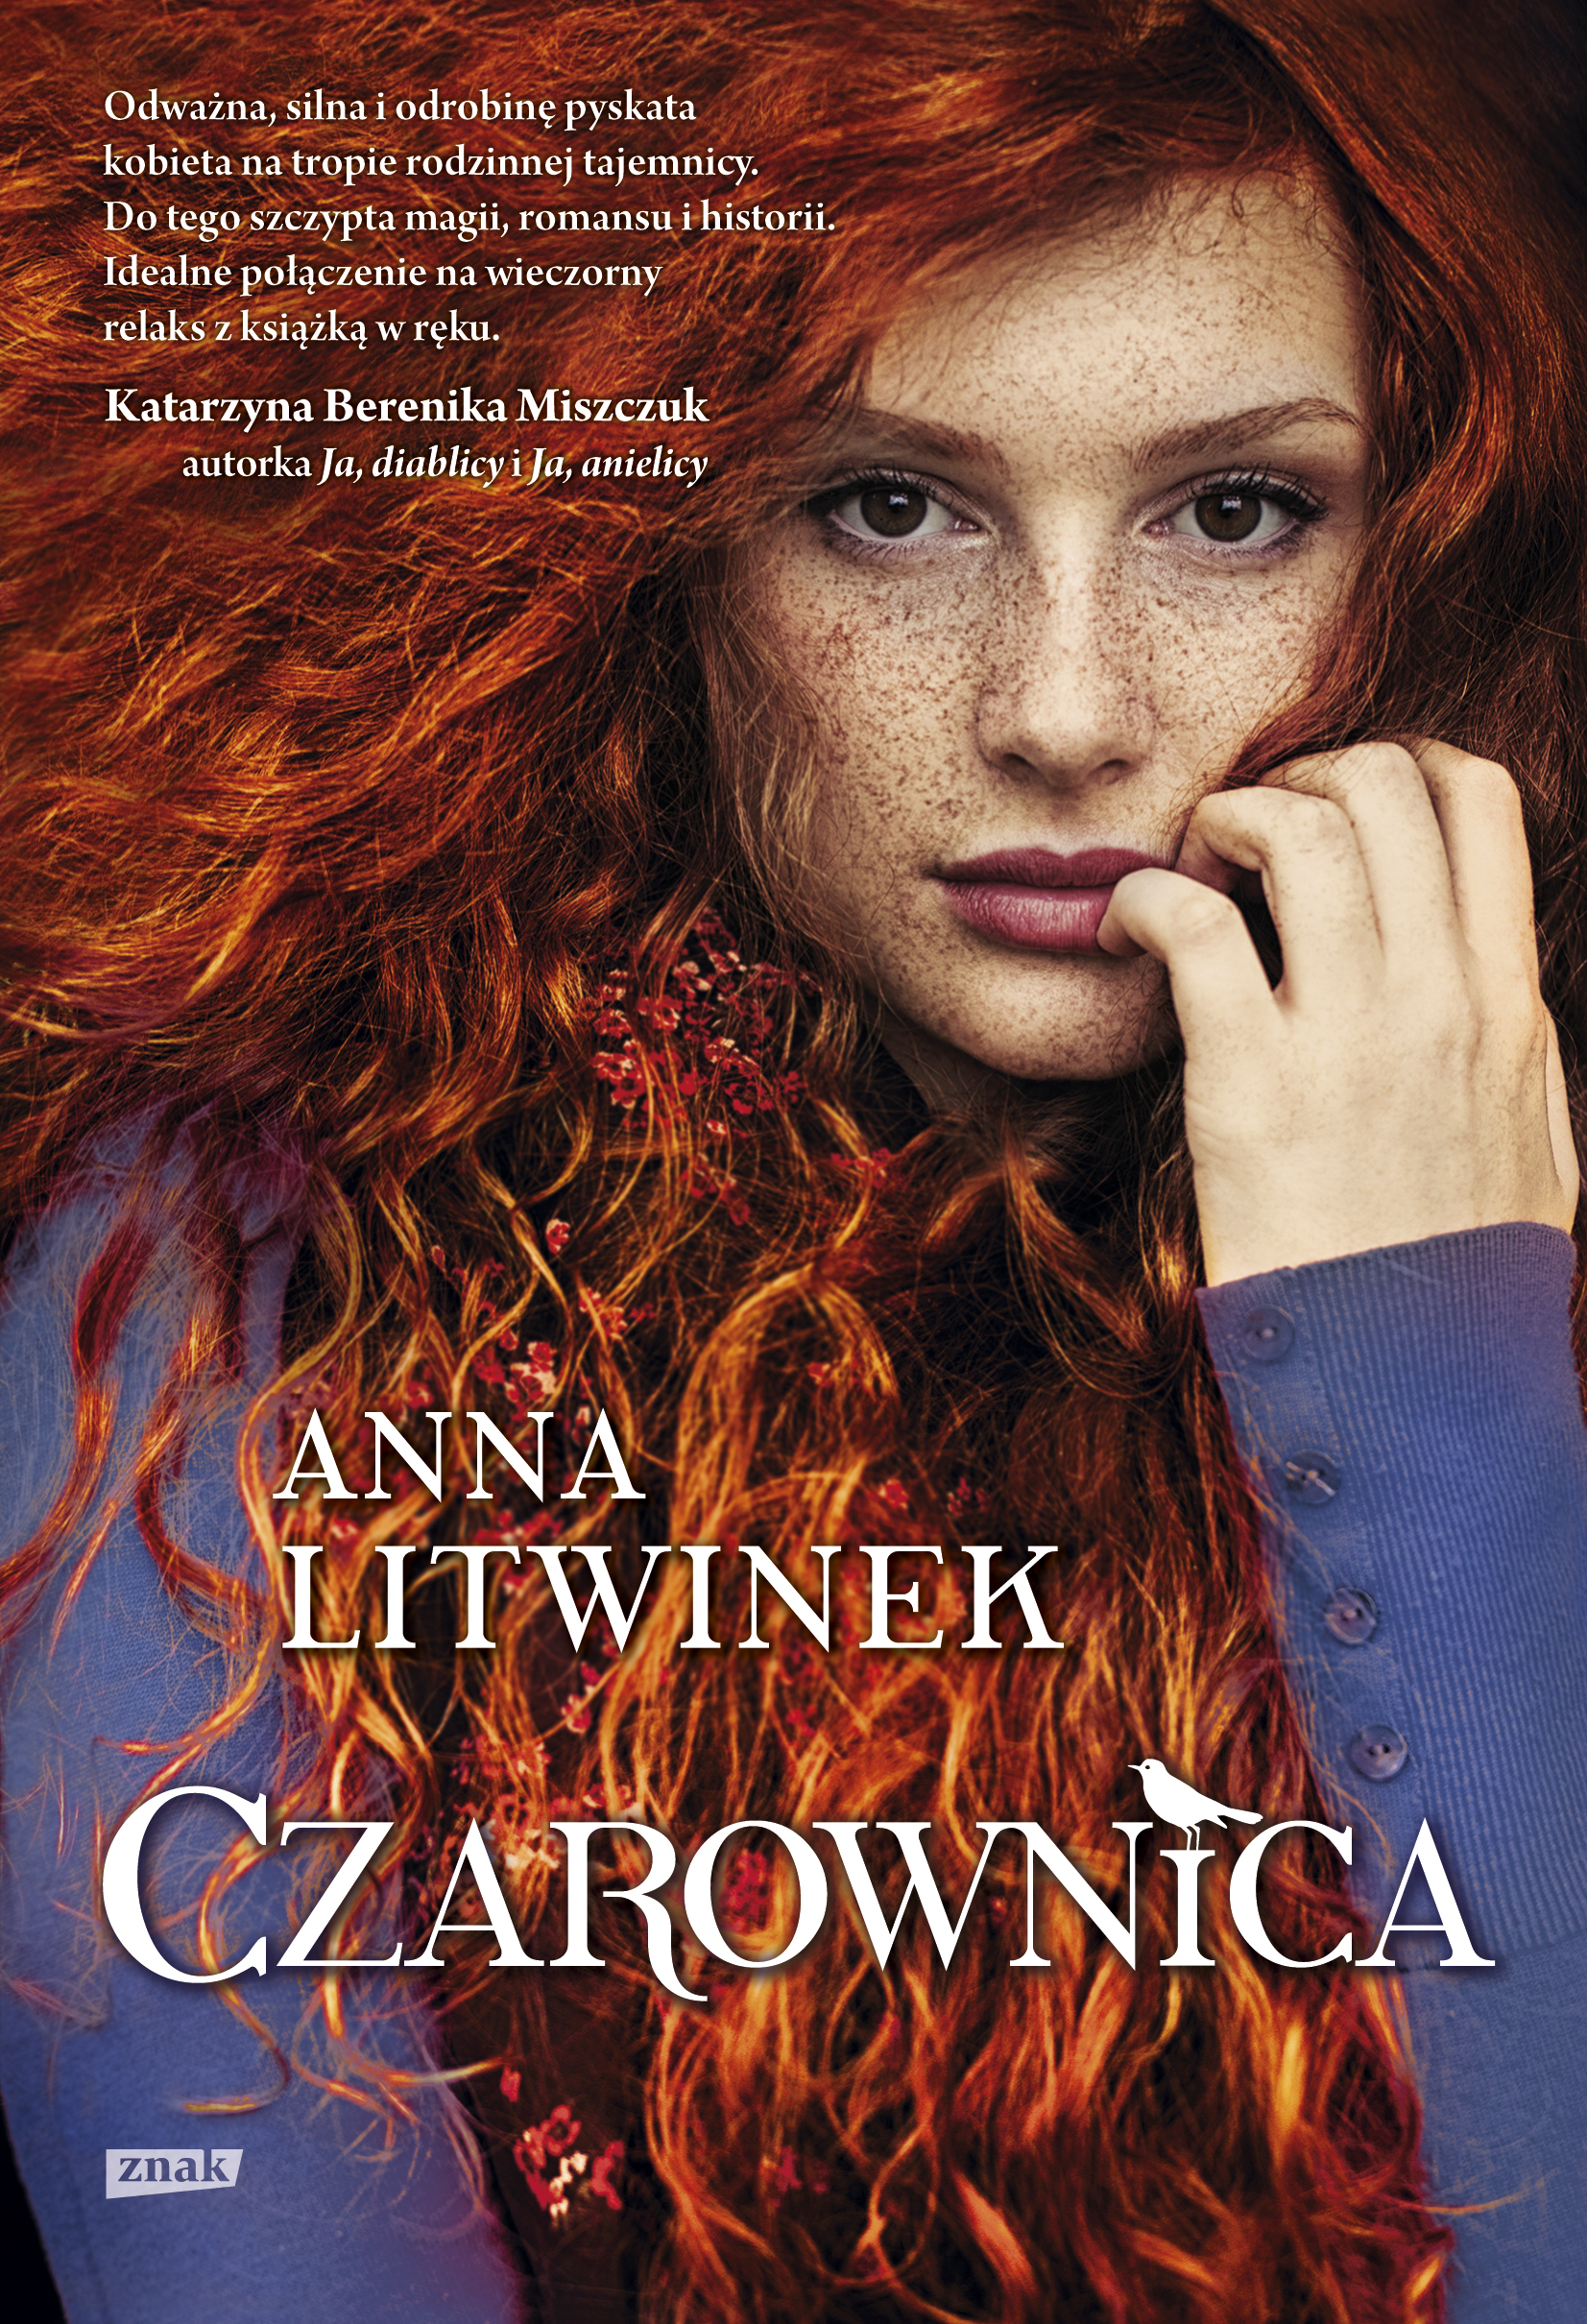 Premiera powieści Czarownica 16 marca 2016.